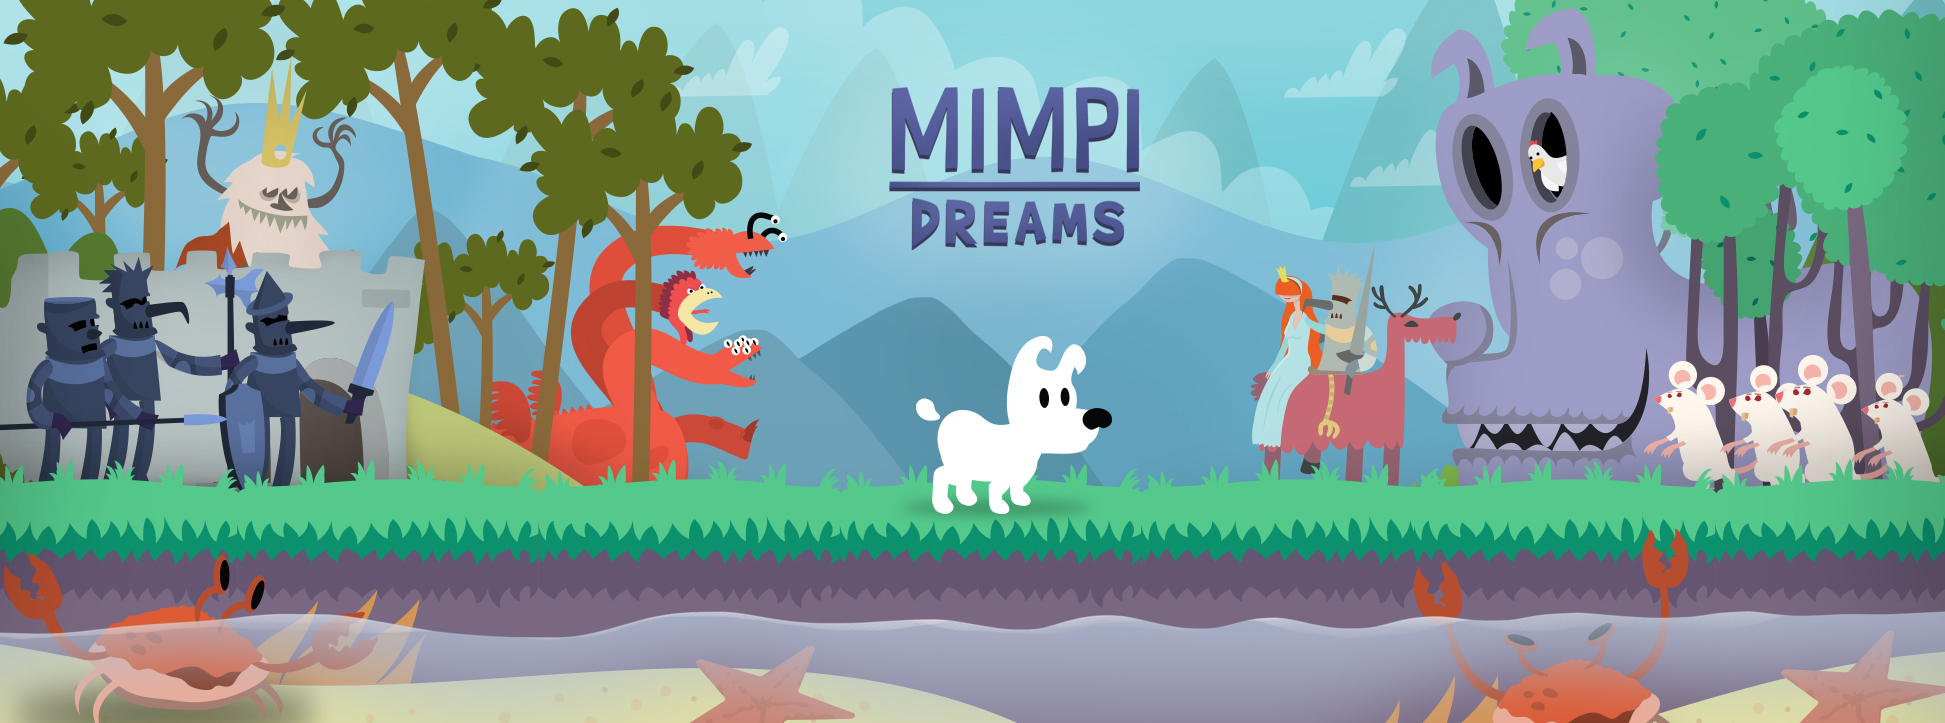 Mimpi Dreams – recenze české plošinovky